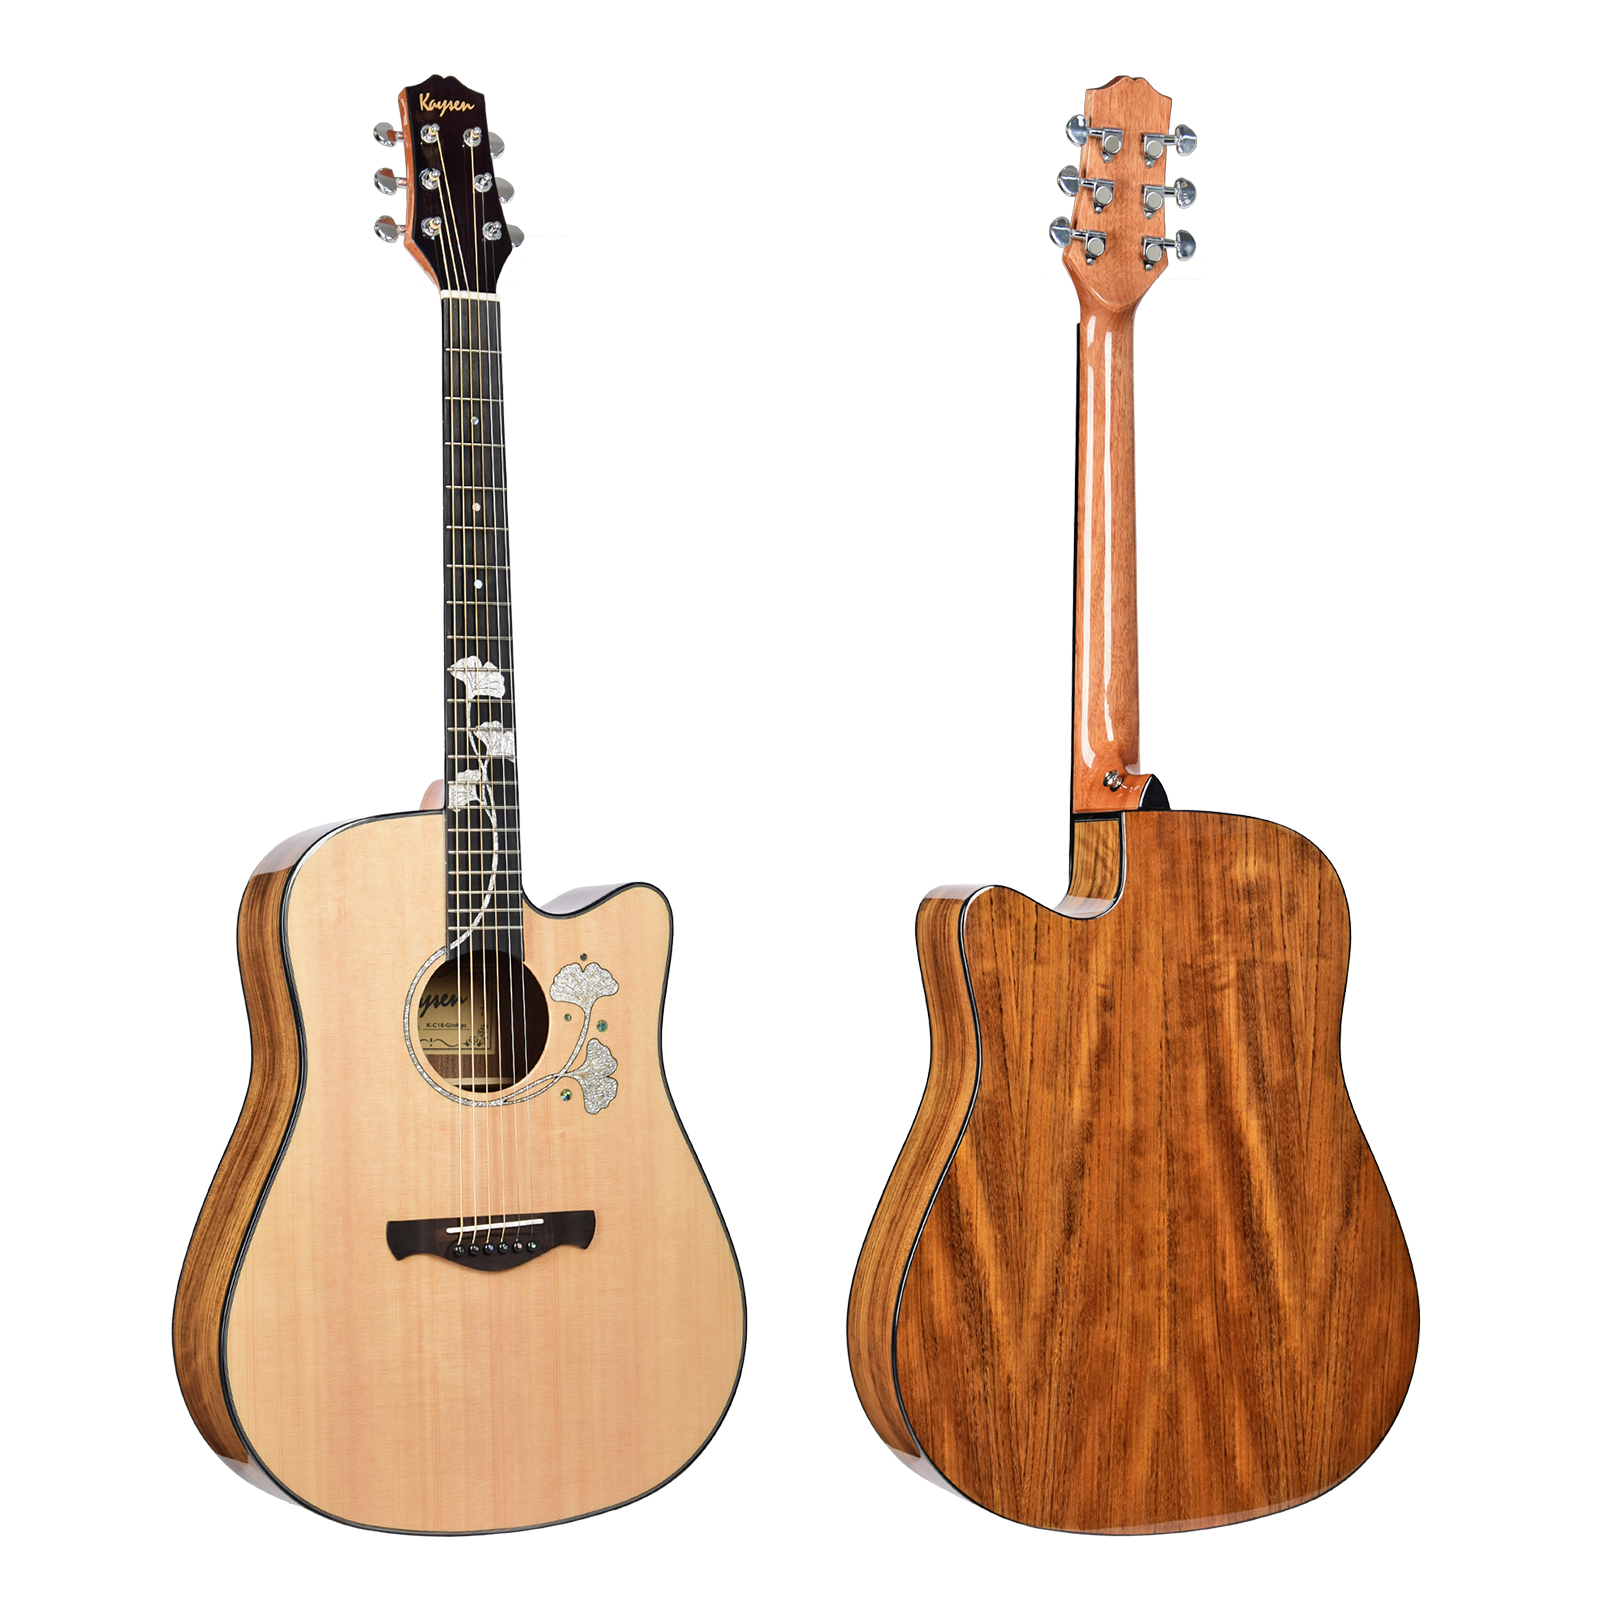 גיטרה אקוסטית מוגברת K-c18 Acoustic guitar solid wood top